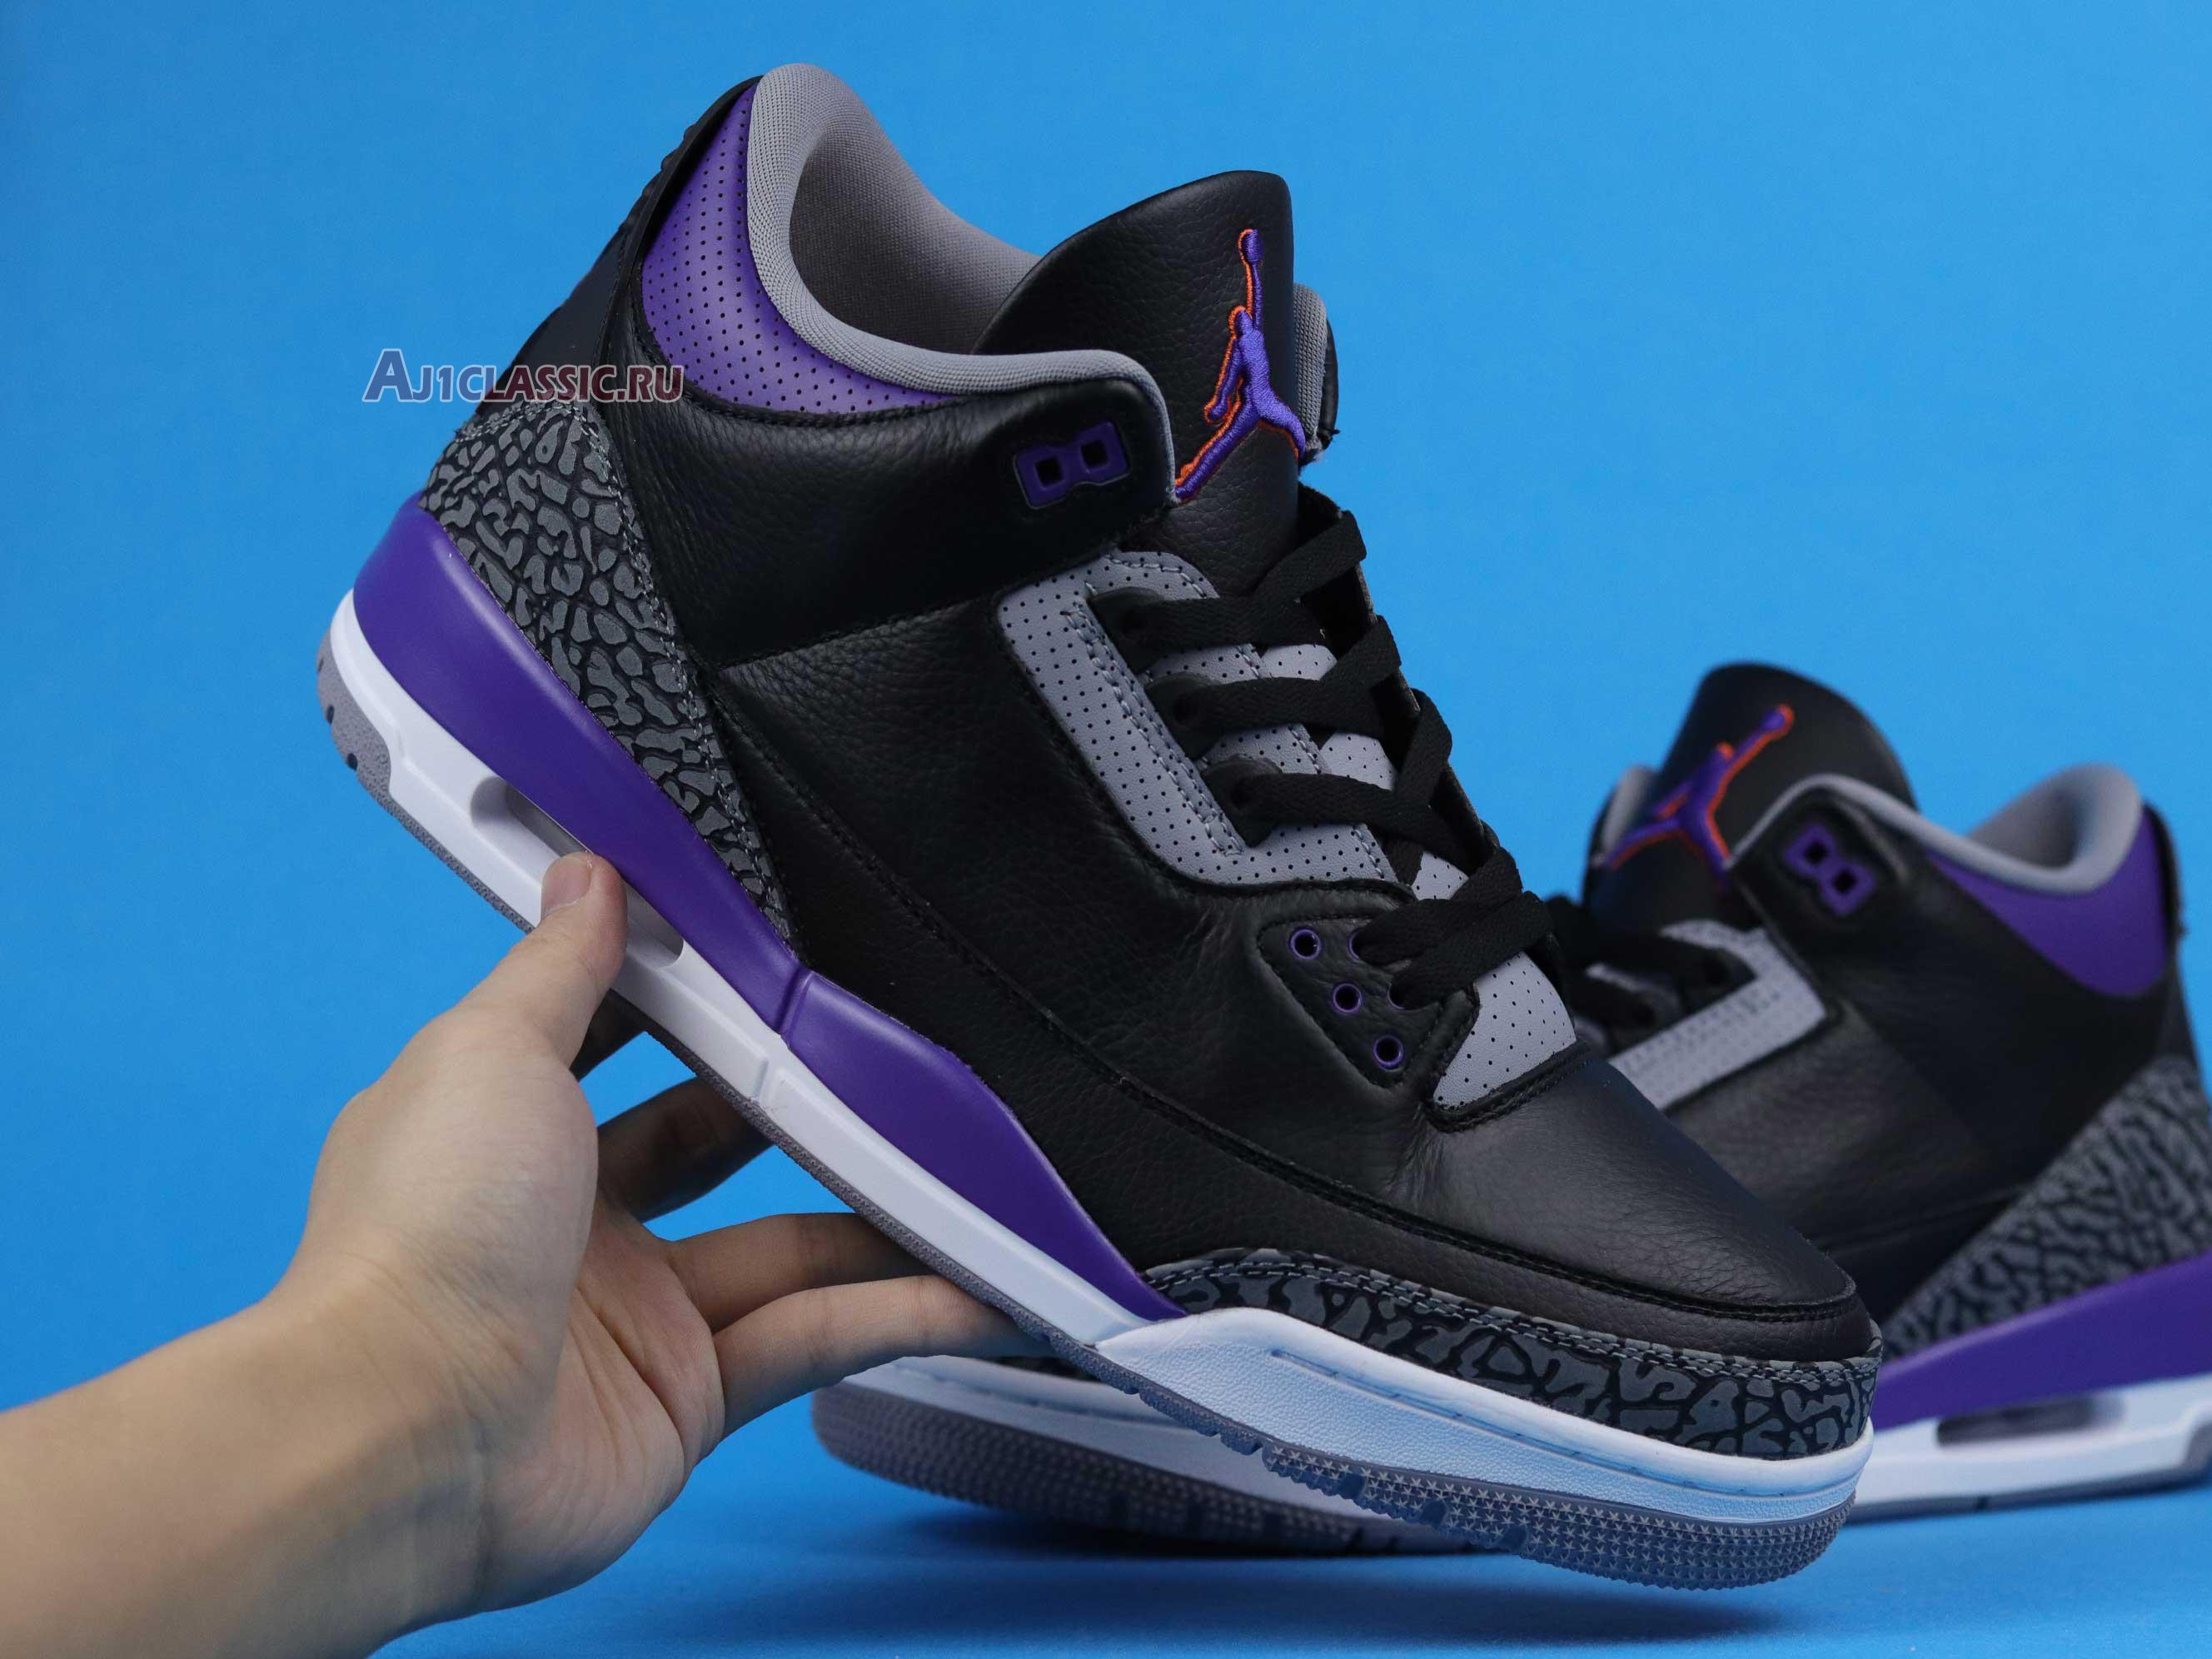 Air Jordan 3 Retro "Court Purple" CT8532-050